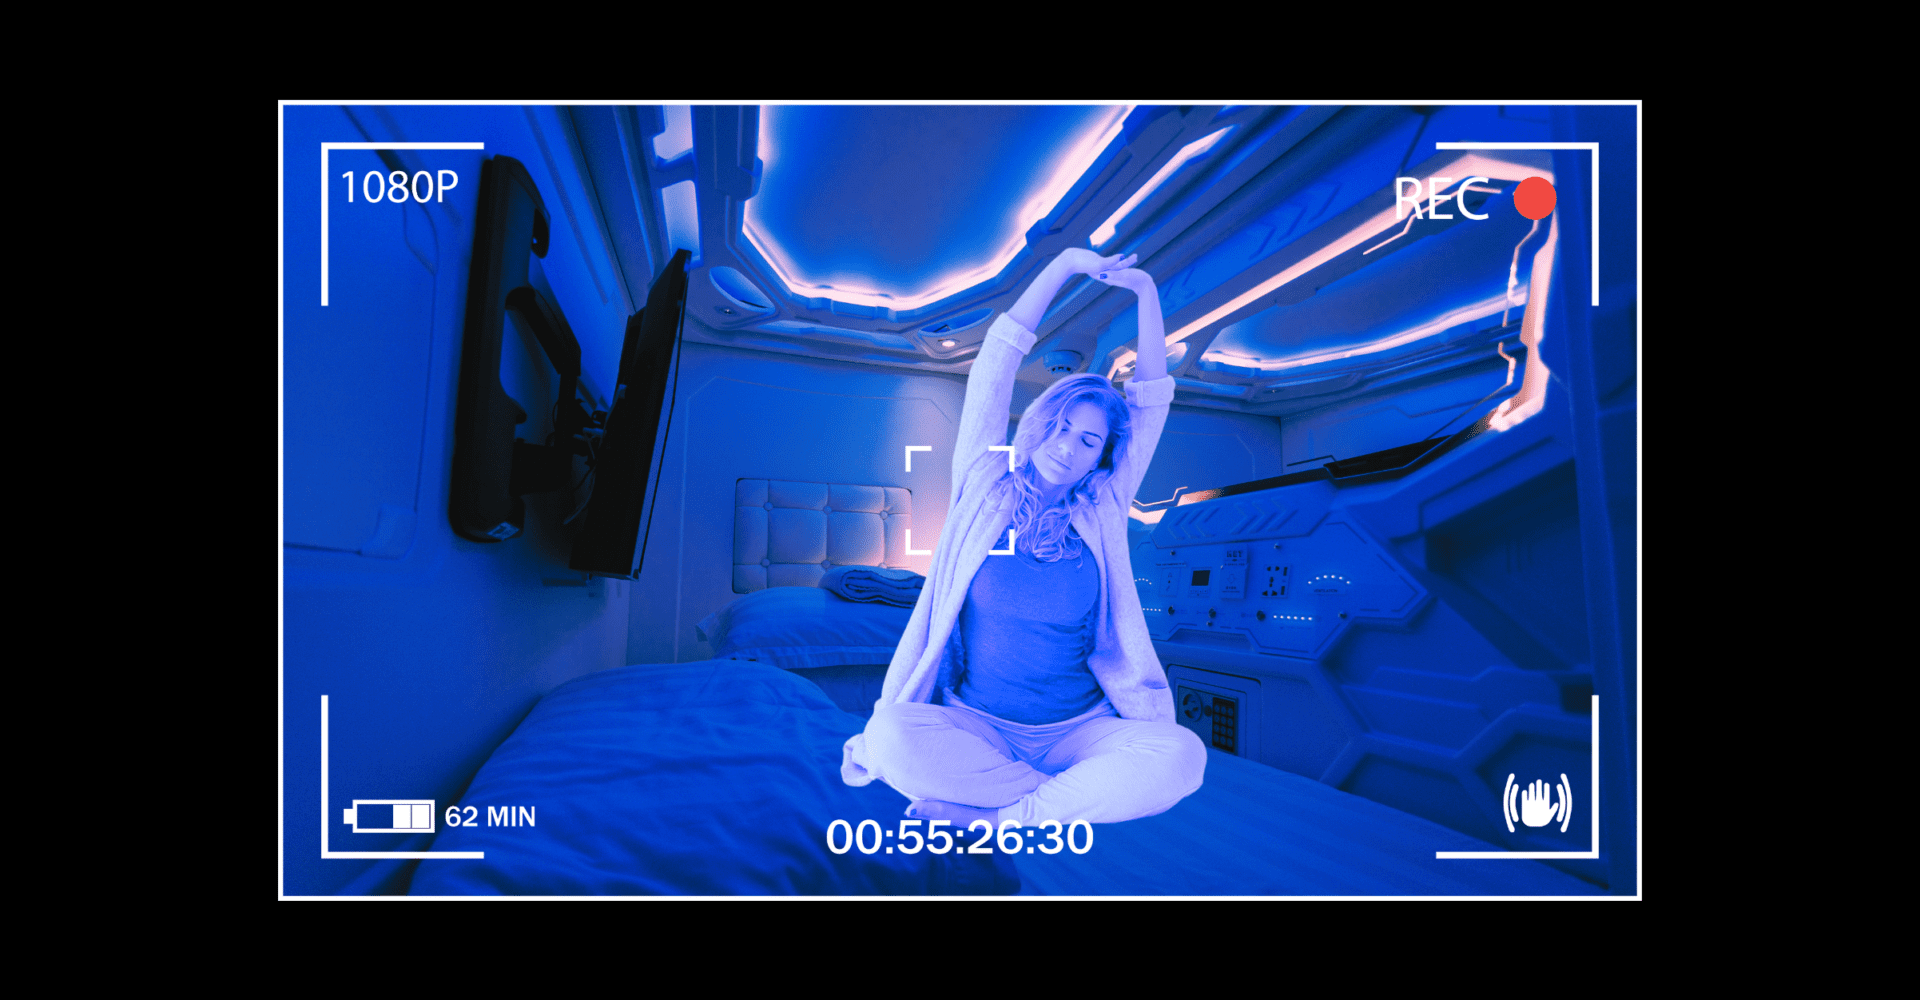 Kobieta ubrana w piżamę wyciąga ręce w górę. Znajduje się w pomieszczeniu pełnym niebieskich świateł LED, siedzi na łóżku.